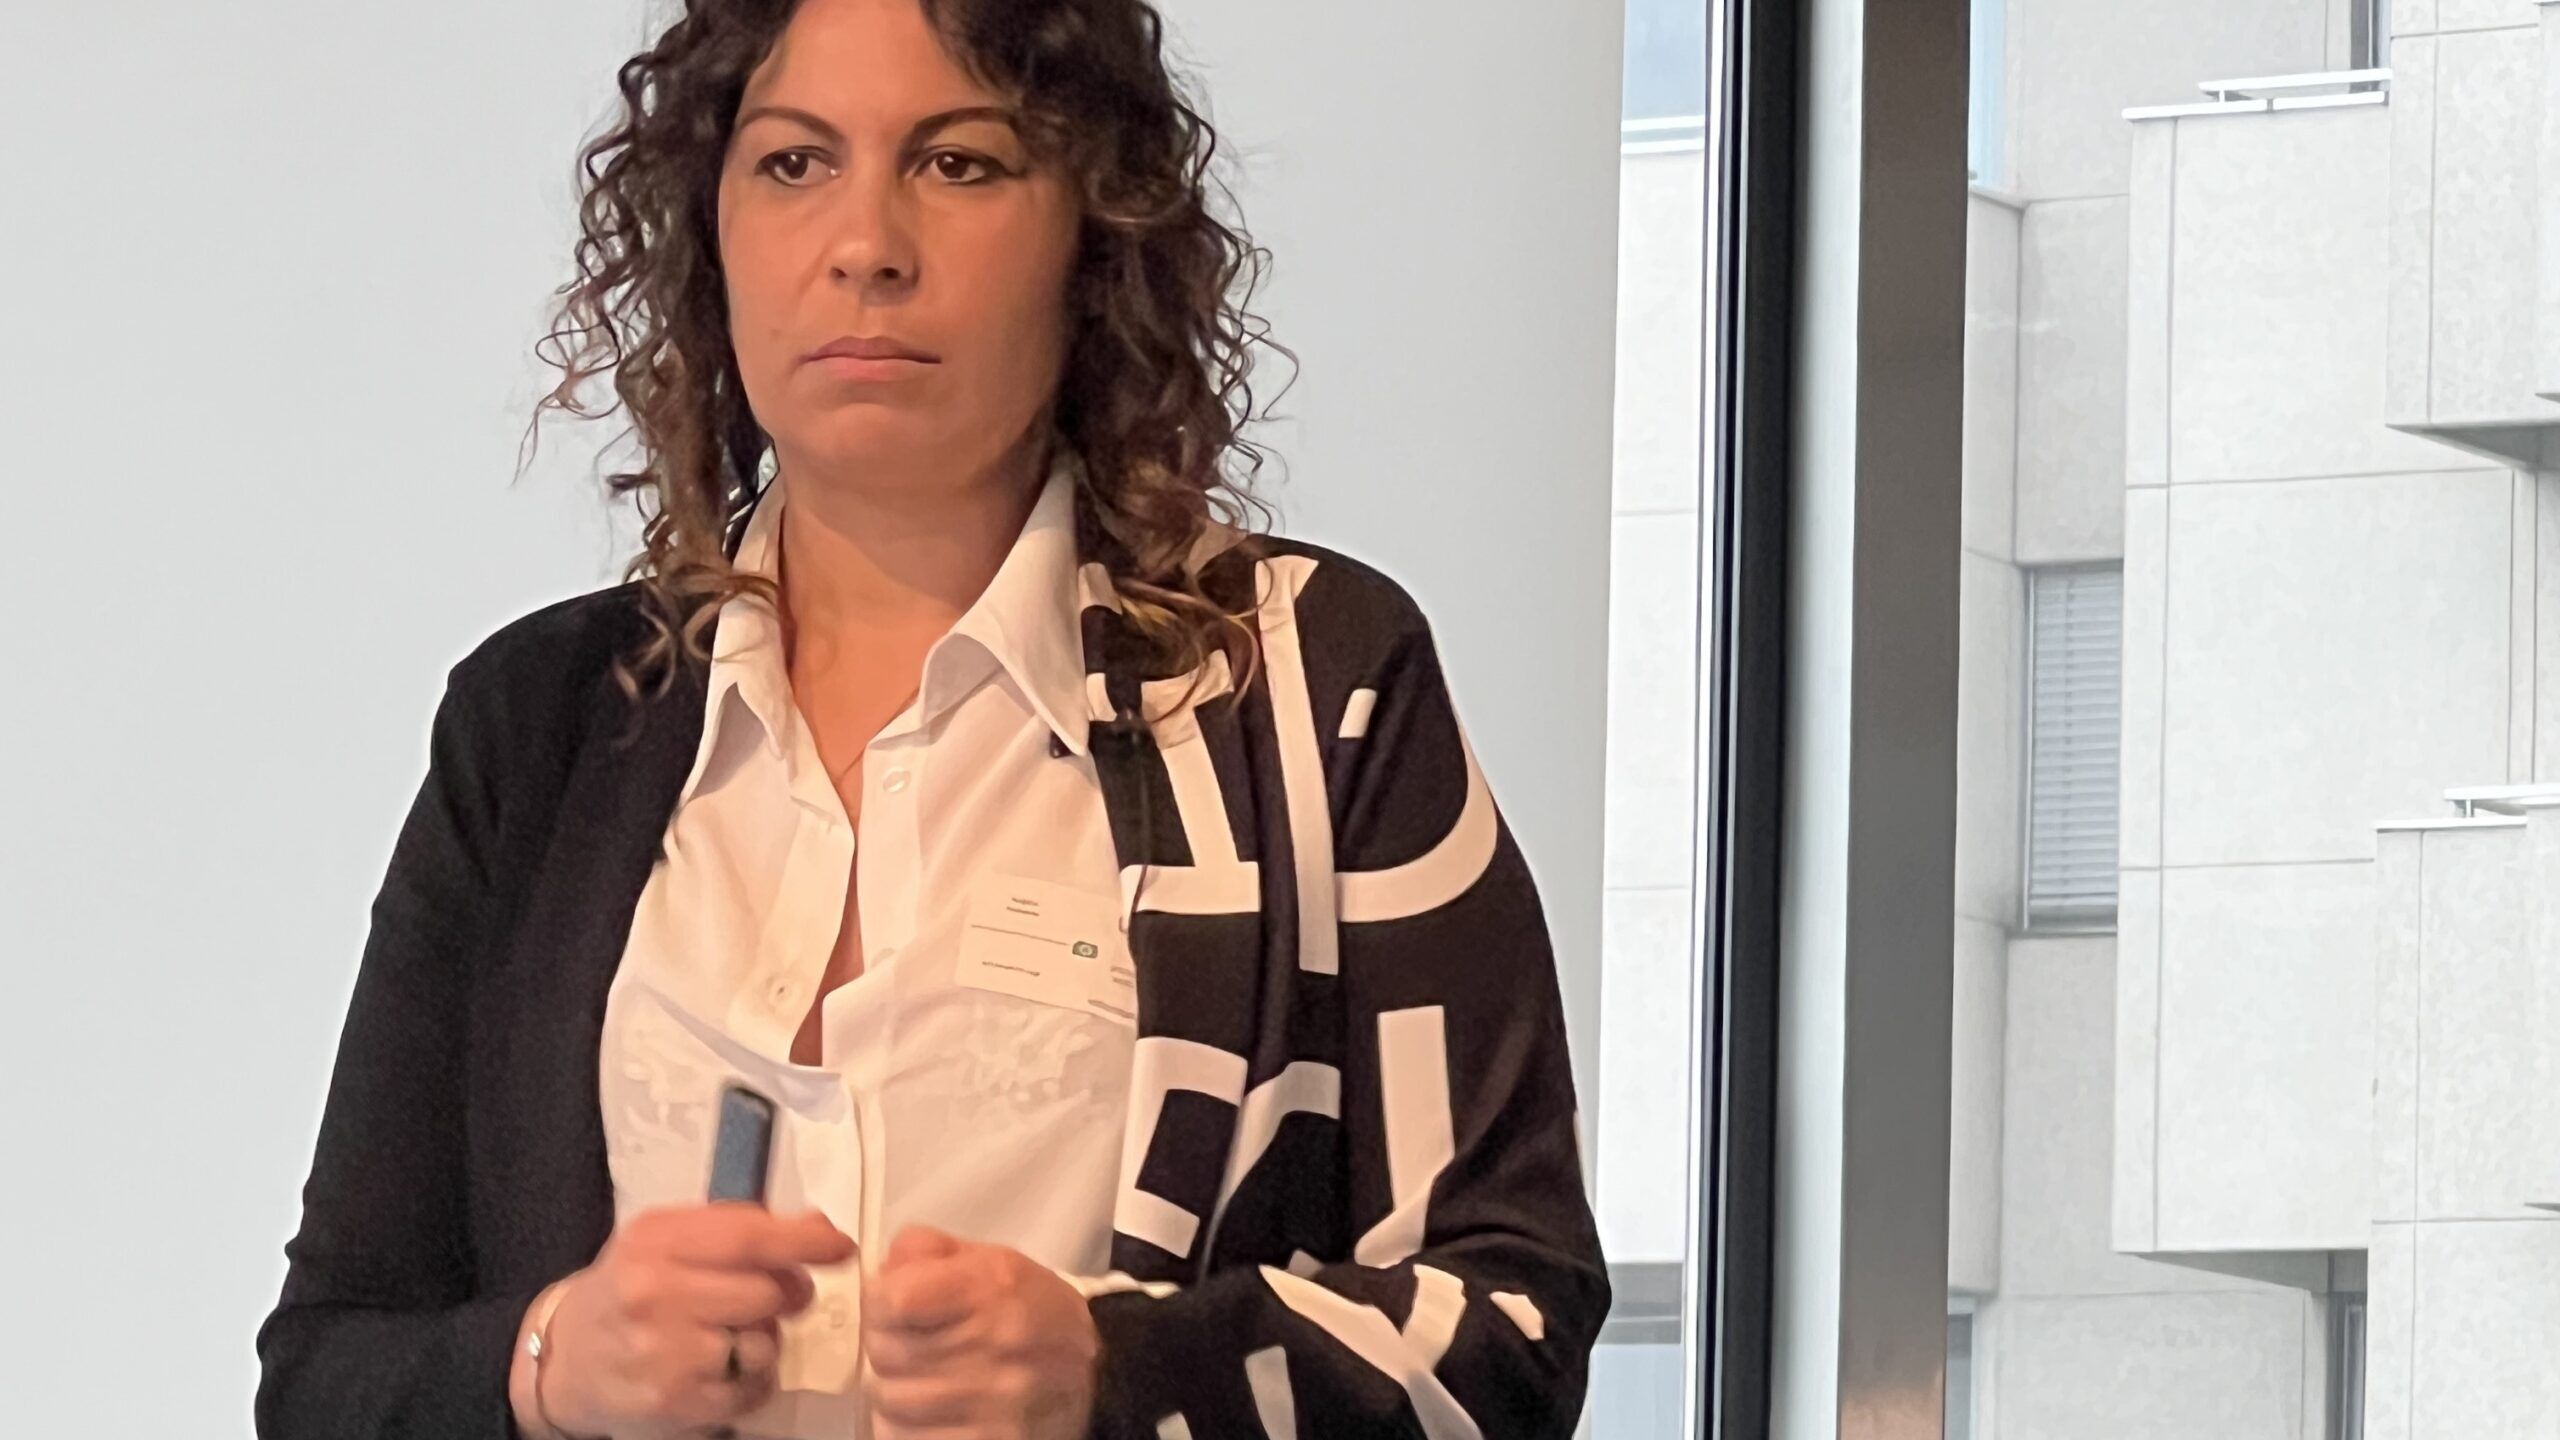 Dati personali: Angela Pedalina, giurista e socia di Informatich Sagl. è stata una delle relatrici all’edizione 2023 dello “LPD Day” di Lugano il 24 marzo 2023